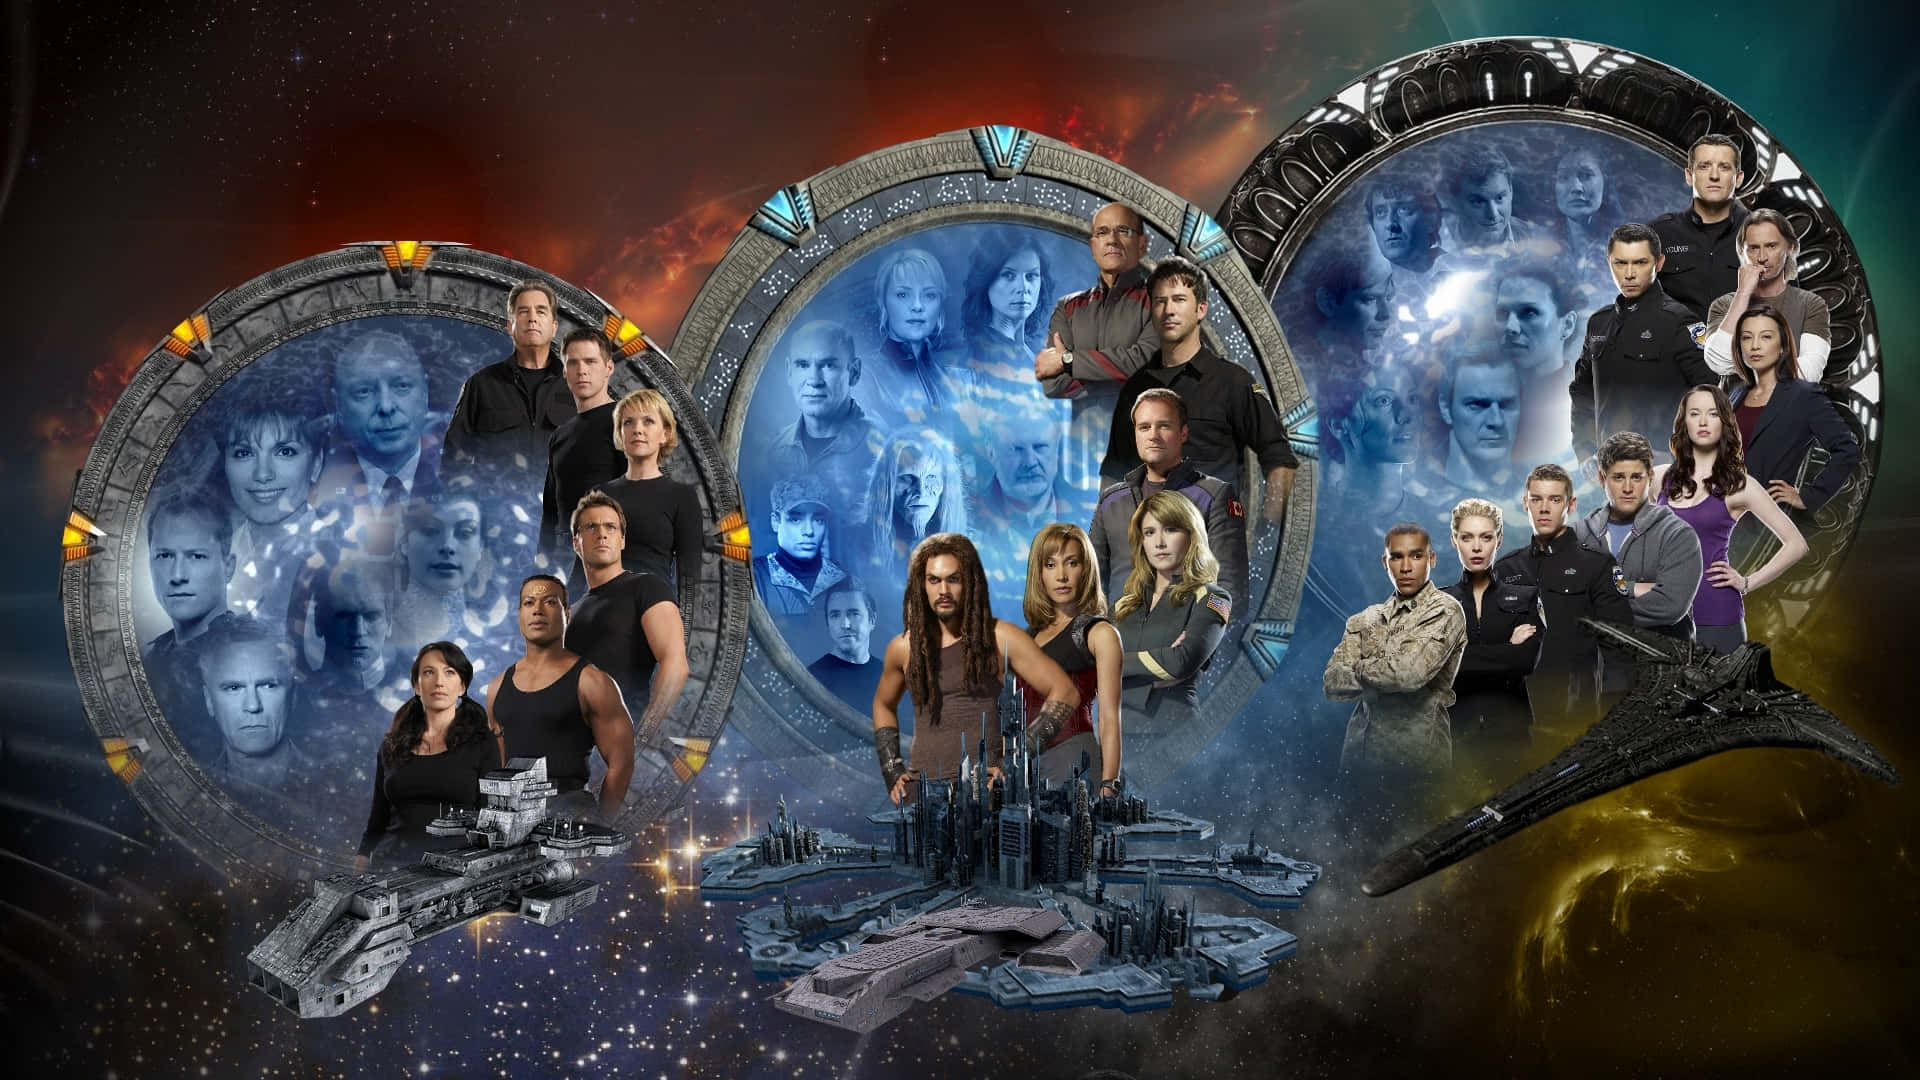 Et ikonisk syn af Stargate fra det populære tv-show. Wallpaper